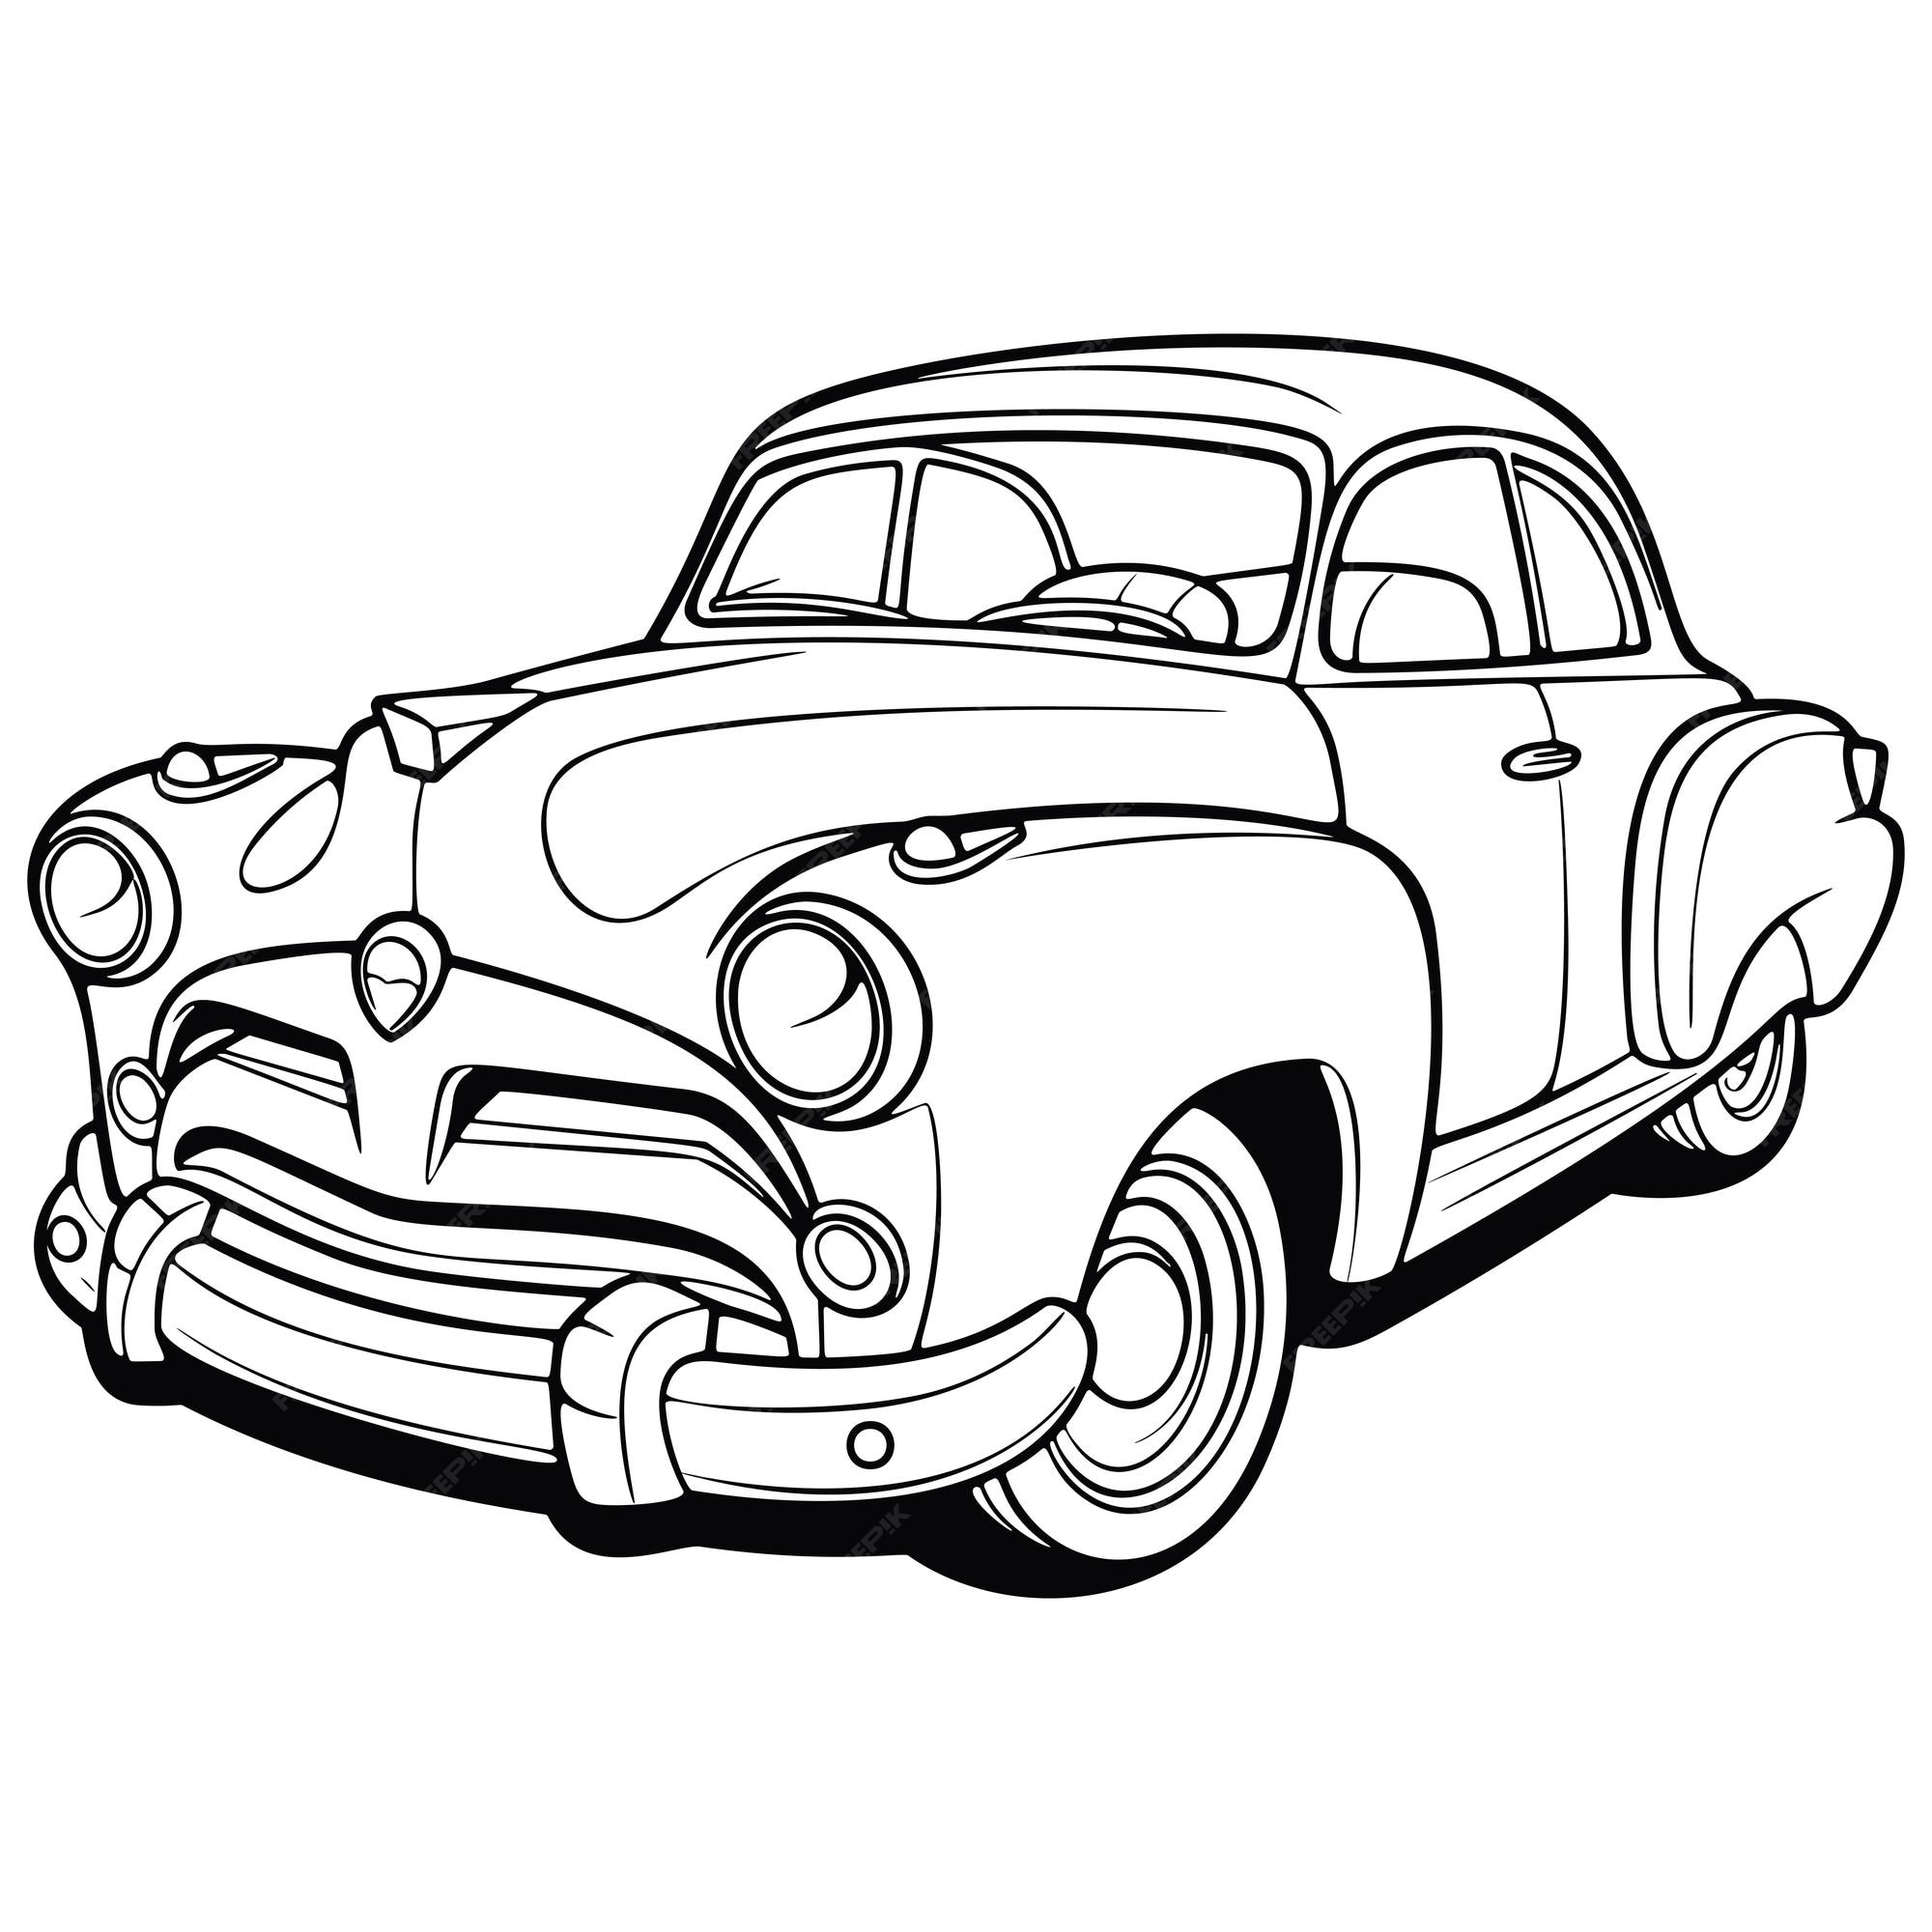 Página para colorir de carros antigos